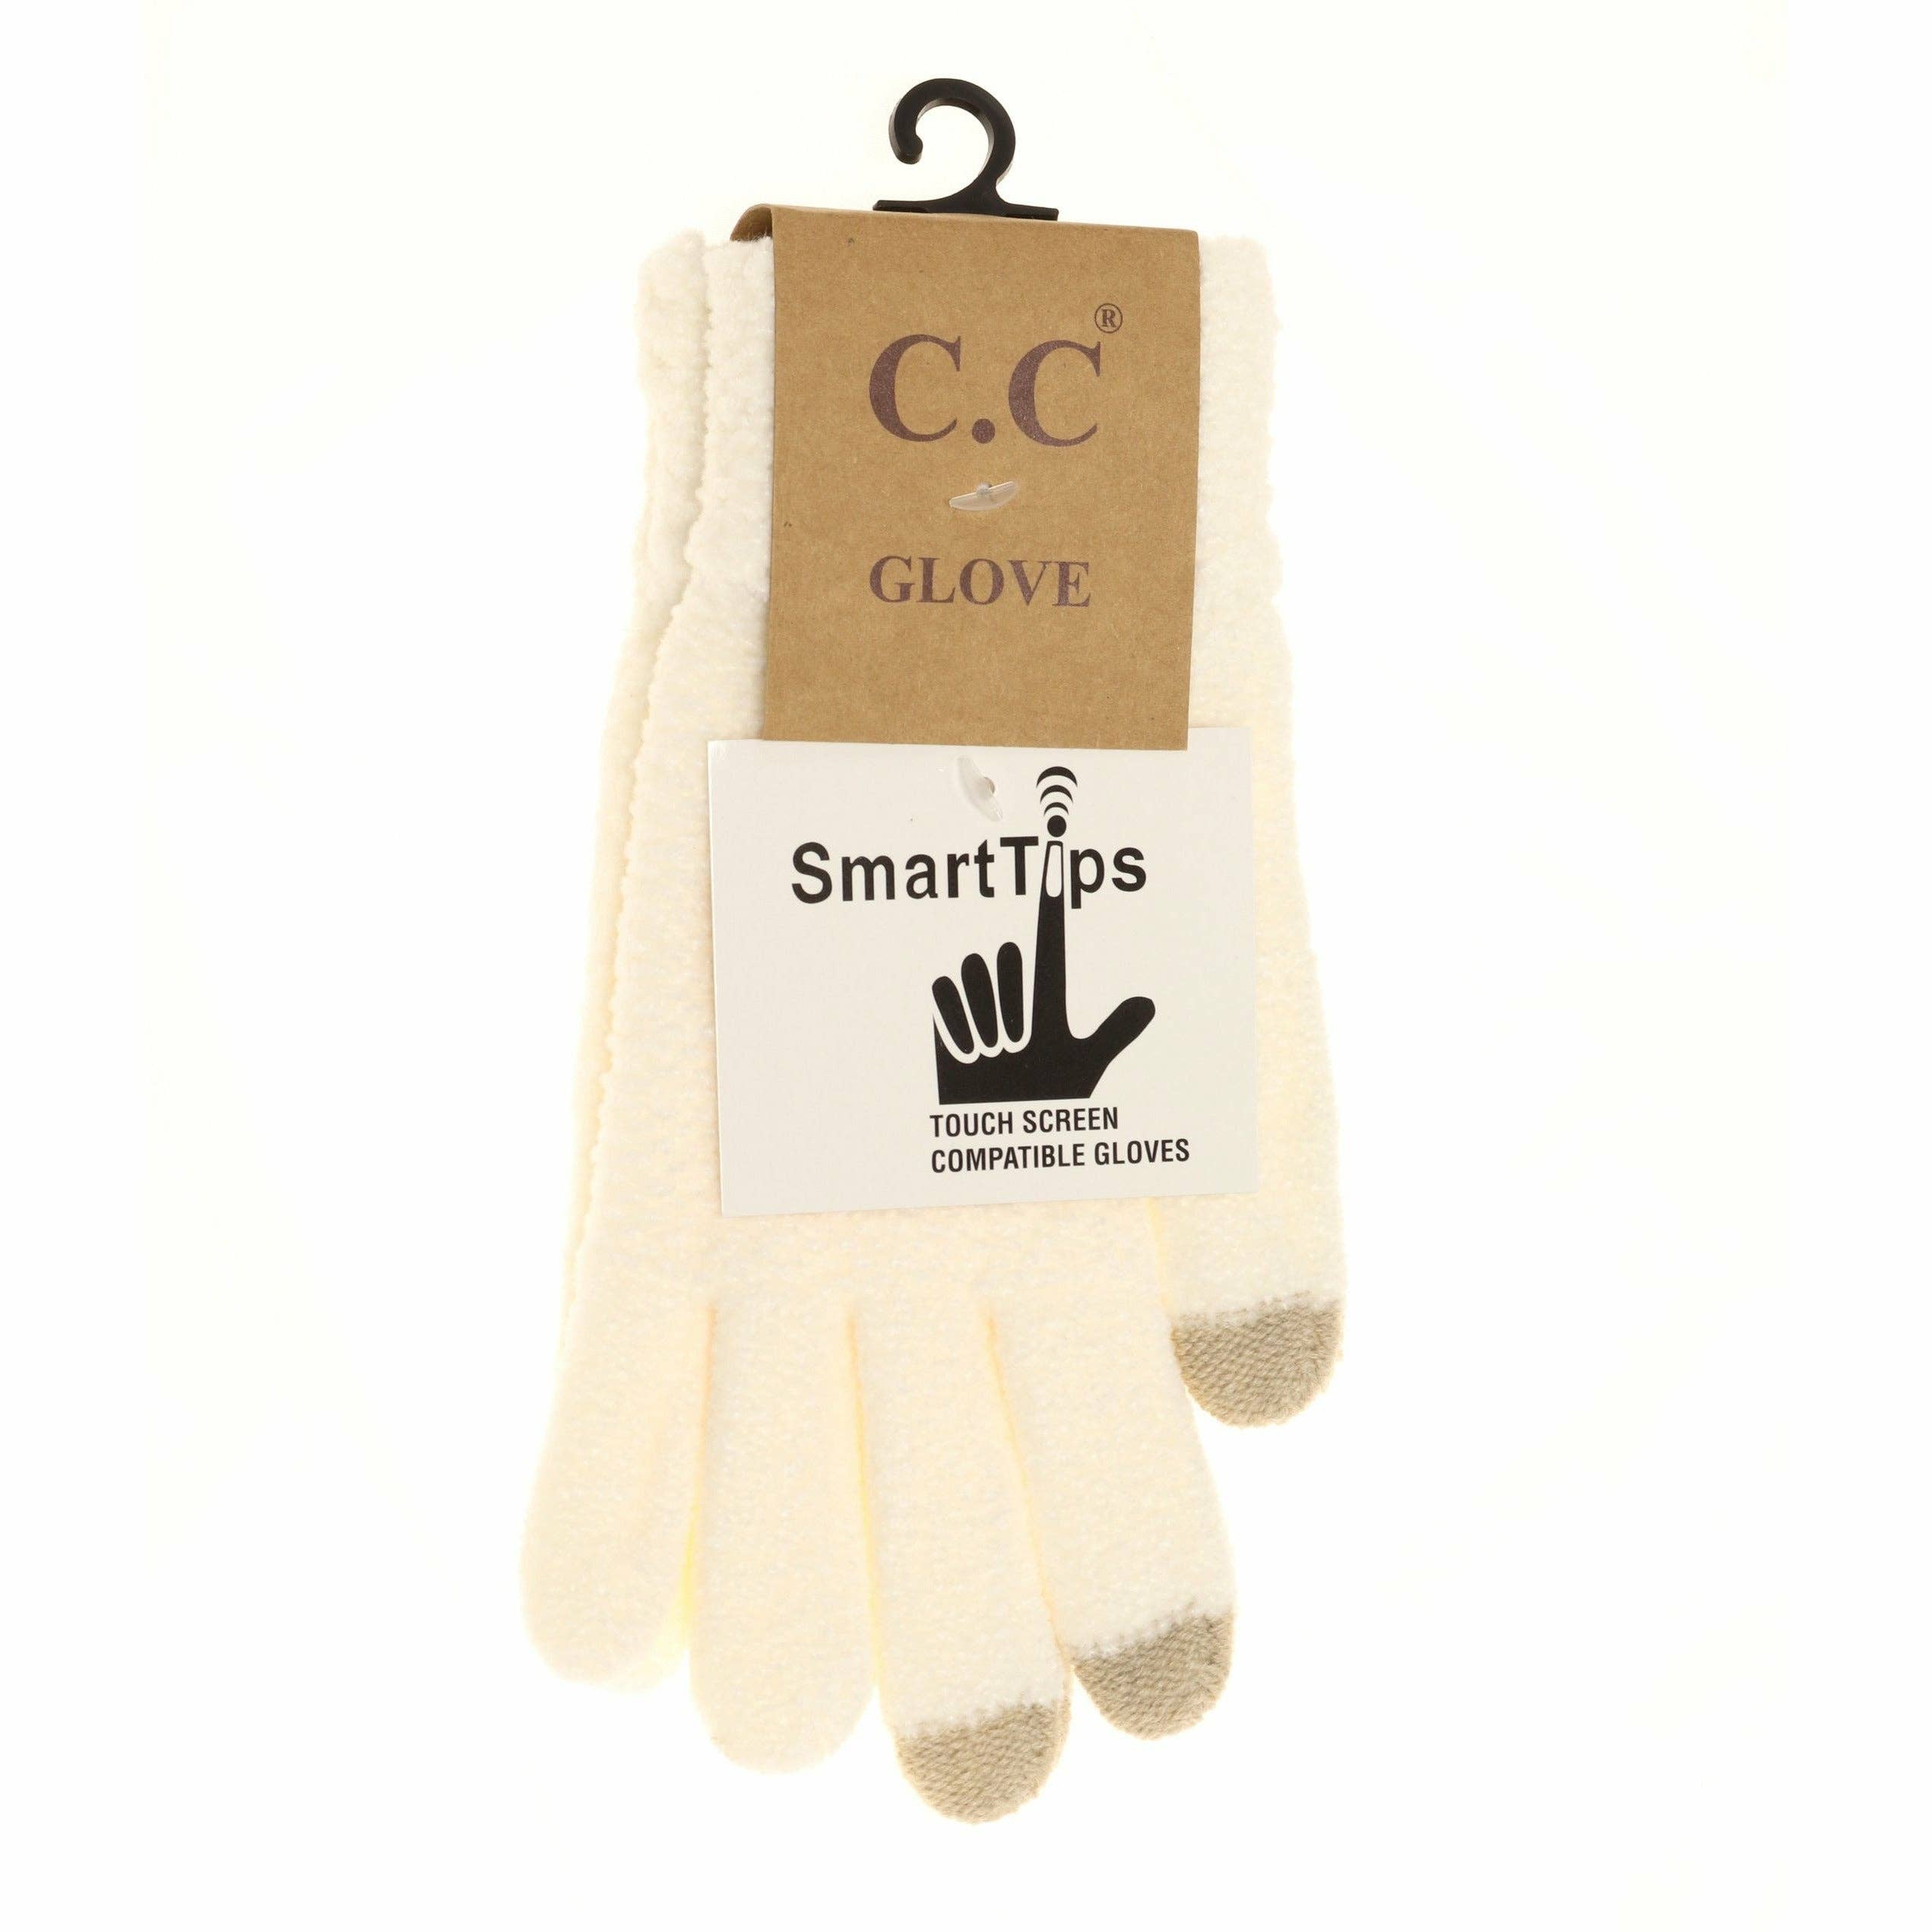 Chenille Gloves G9016: Black